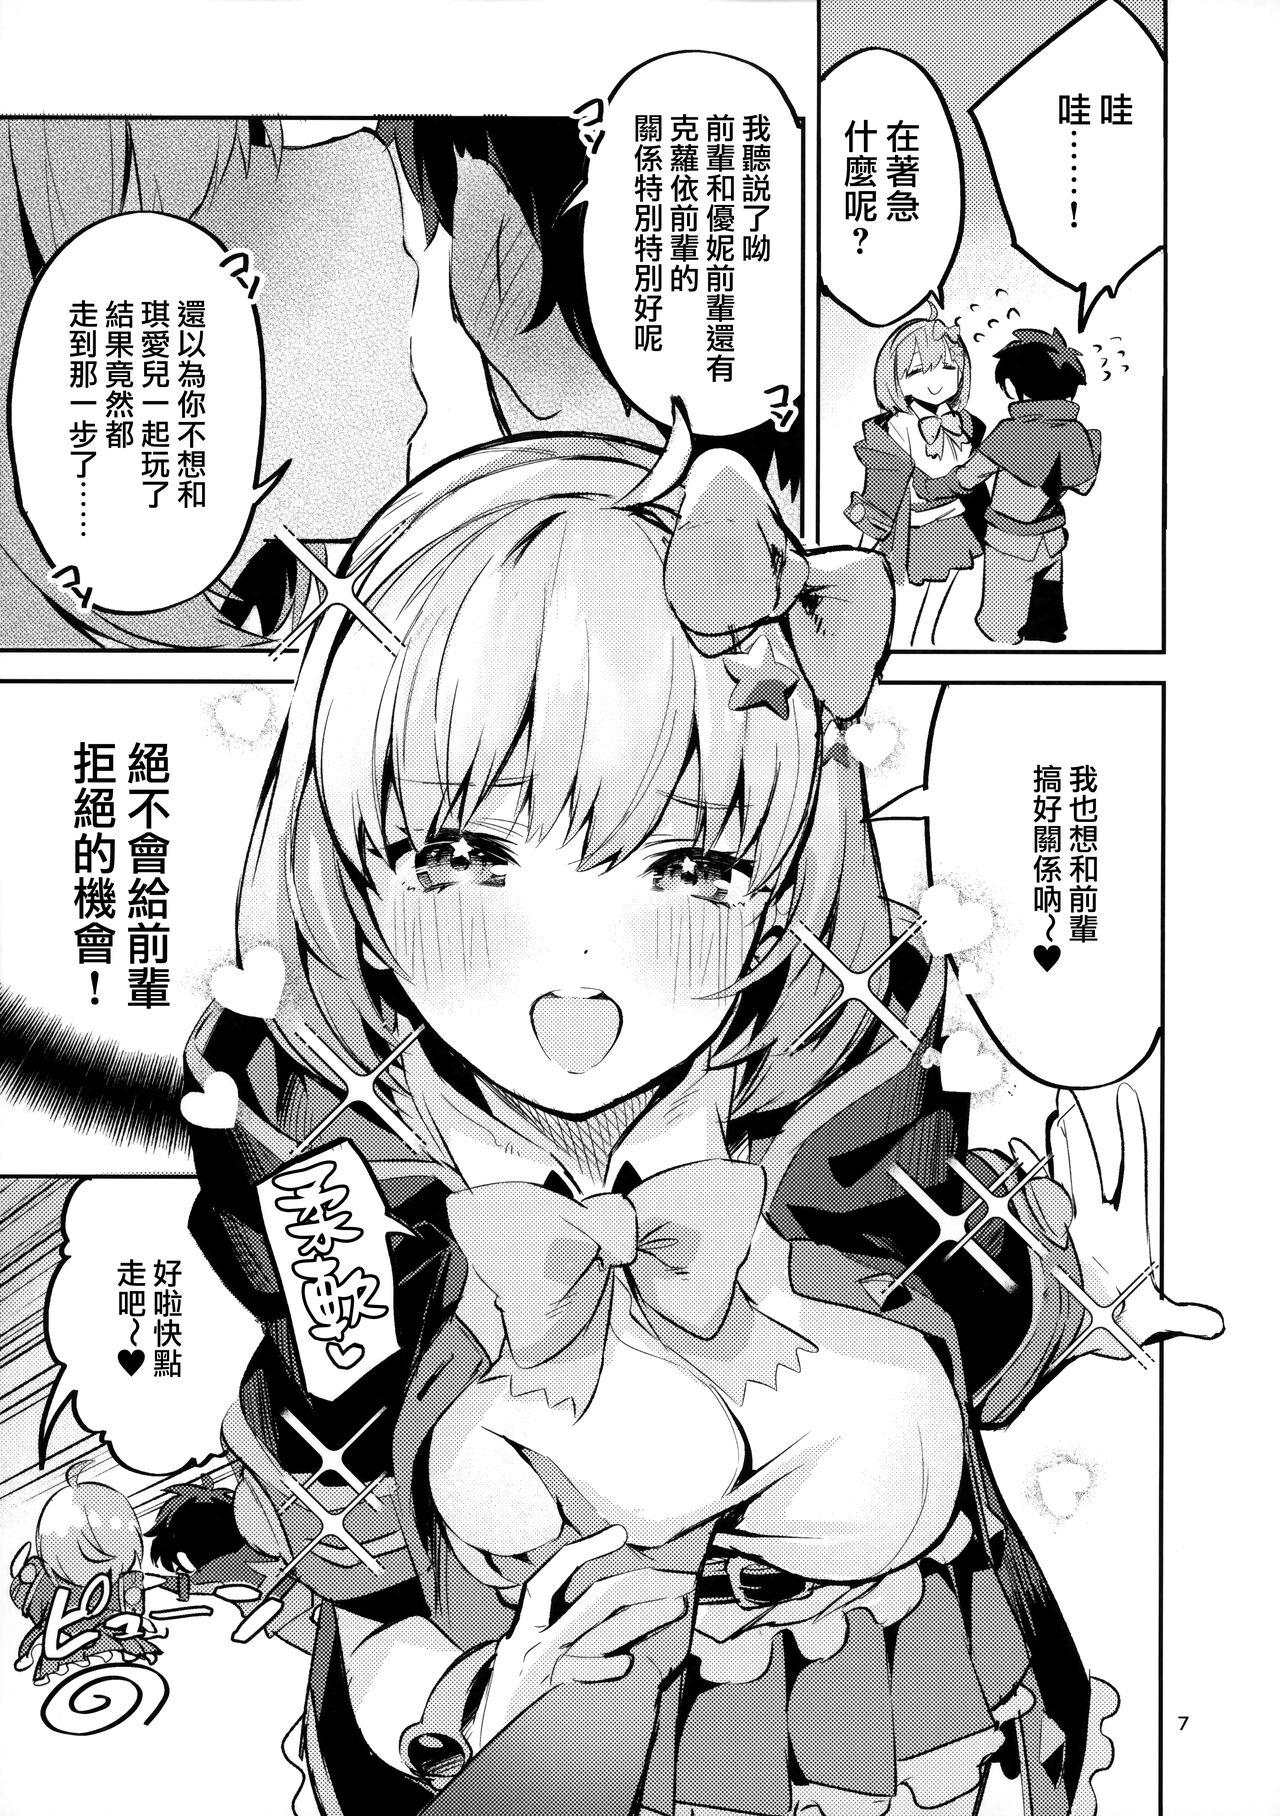 Vecina Seishun Dokusenbi - Princess connect Morocha - Page 7